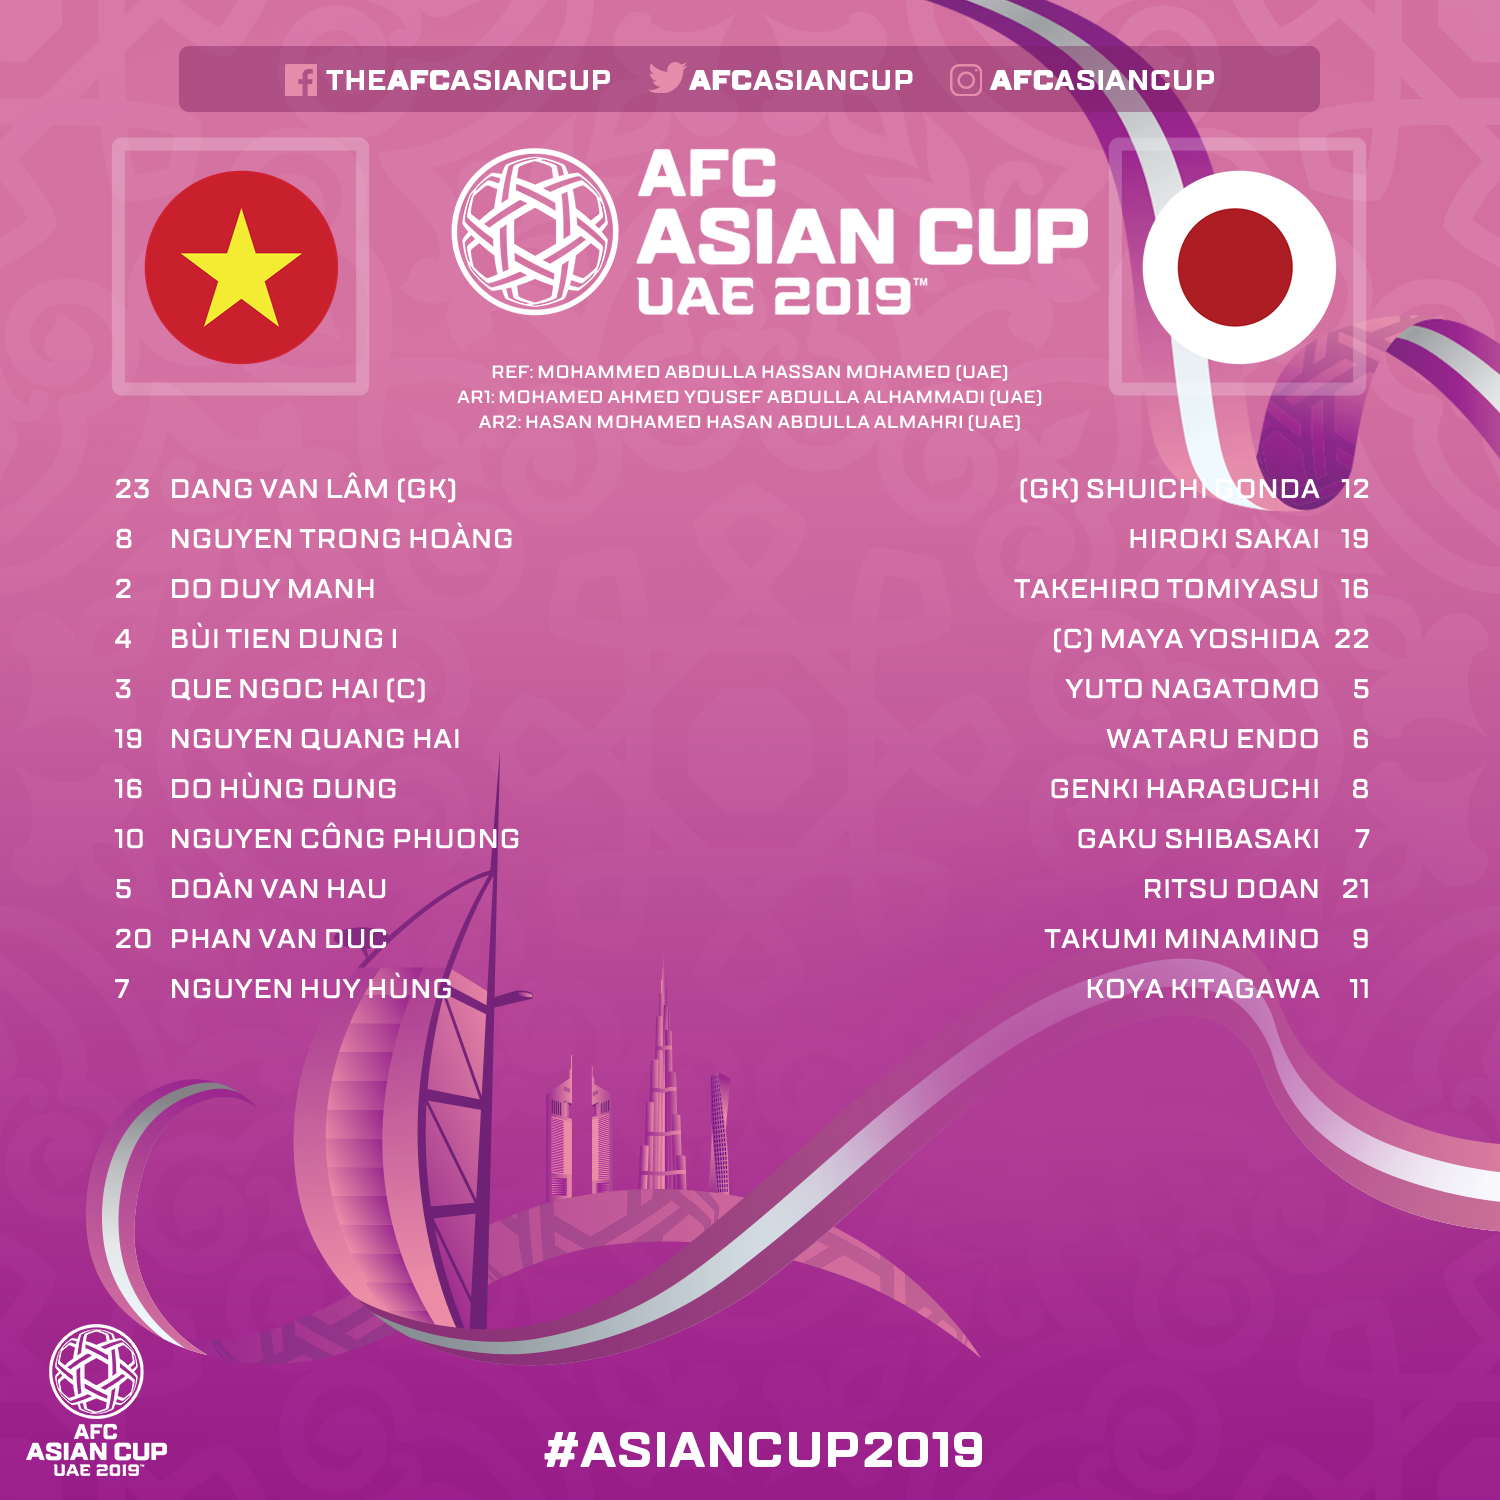 Thất bại trước Nhật Bản, Việt Nam dừng bước tại Tứ kết Asian Cup 2019